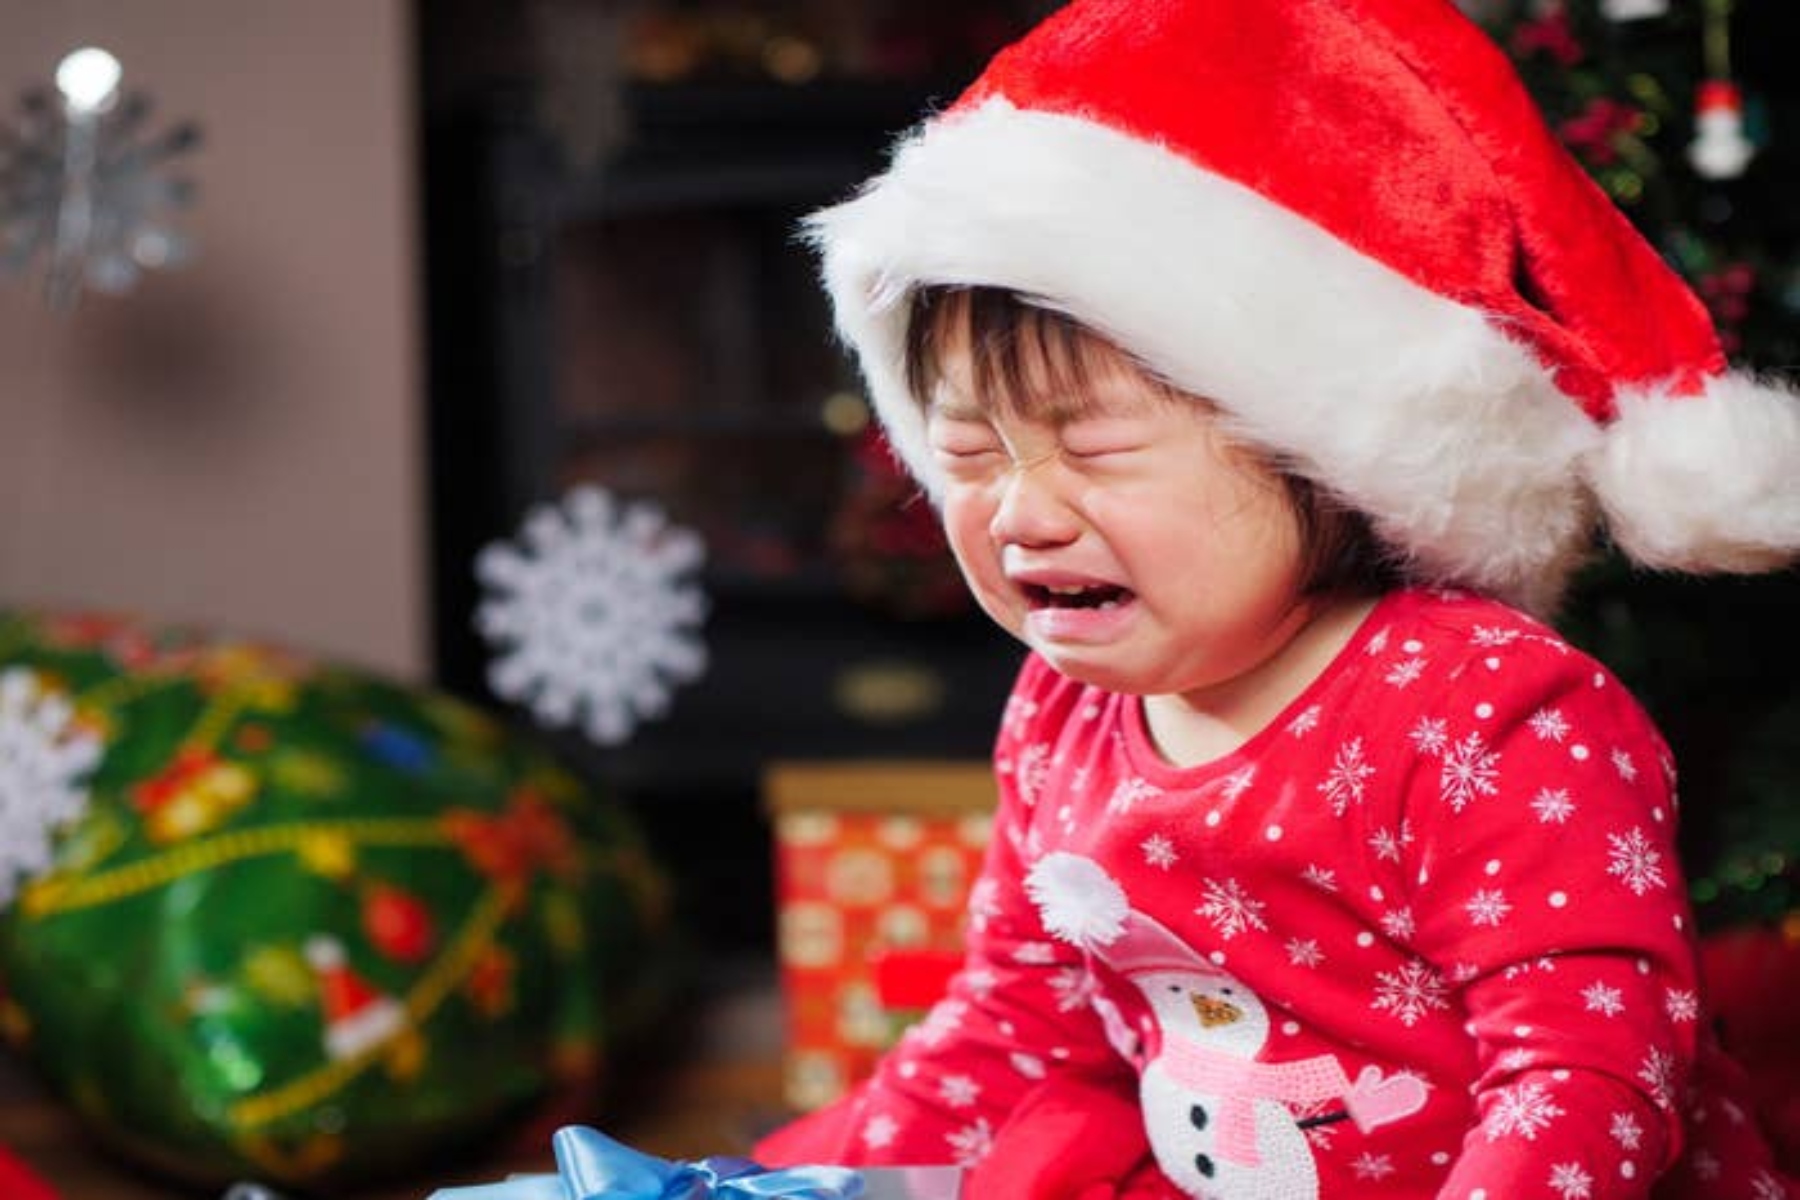 Ψυχική υγεία γιορτές: Πώς επιδρά η περίοδος των γιορτών στην συναισθηματική μας κατάσταση;